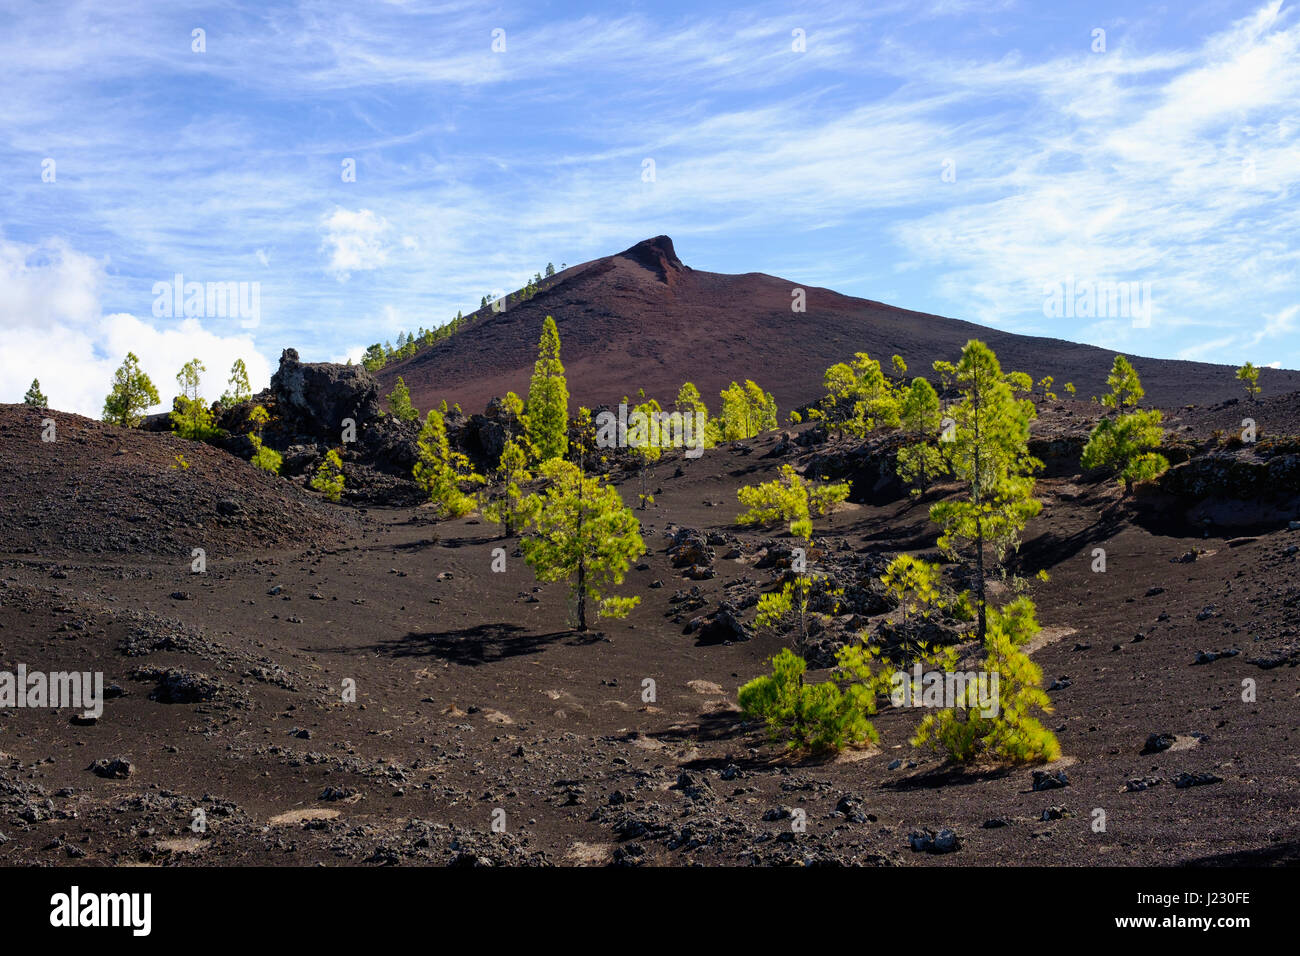 Montana Negra oder Volcan Garachico, bei El Tanque, Teneriffa, Kanarische Inseln, Spanien Stock Photo